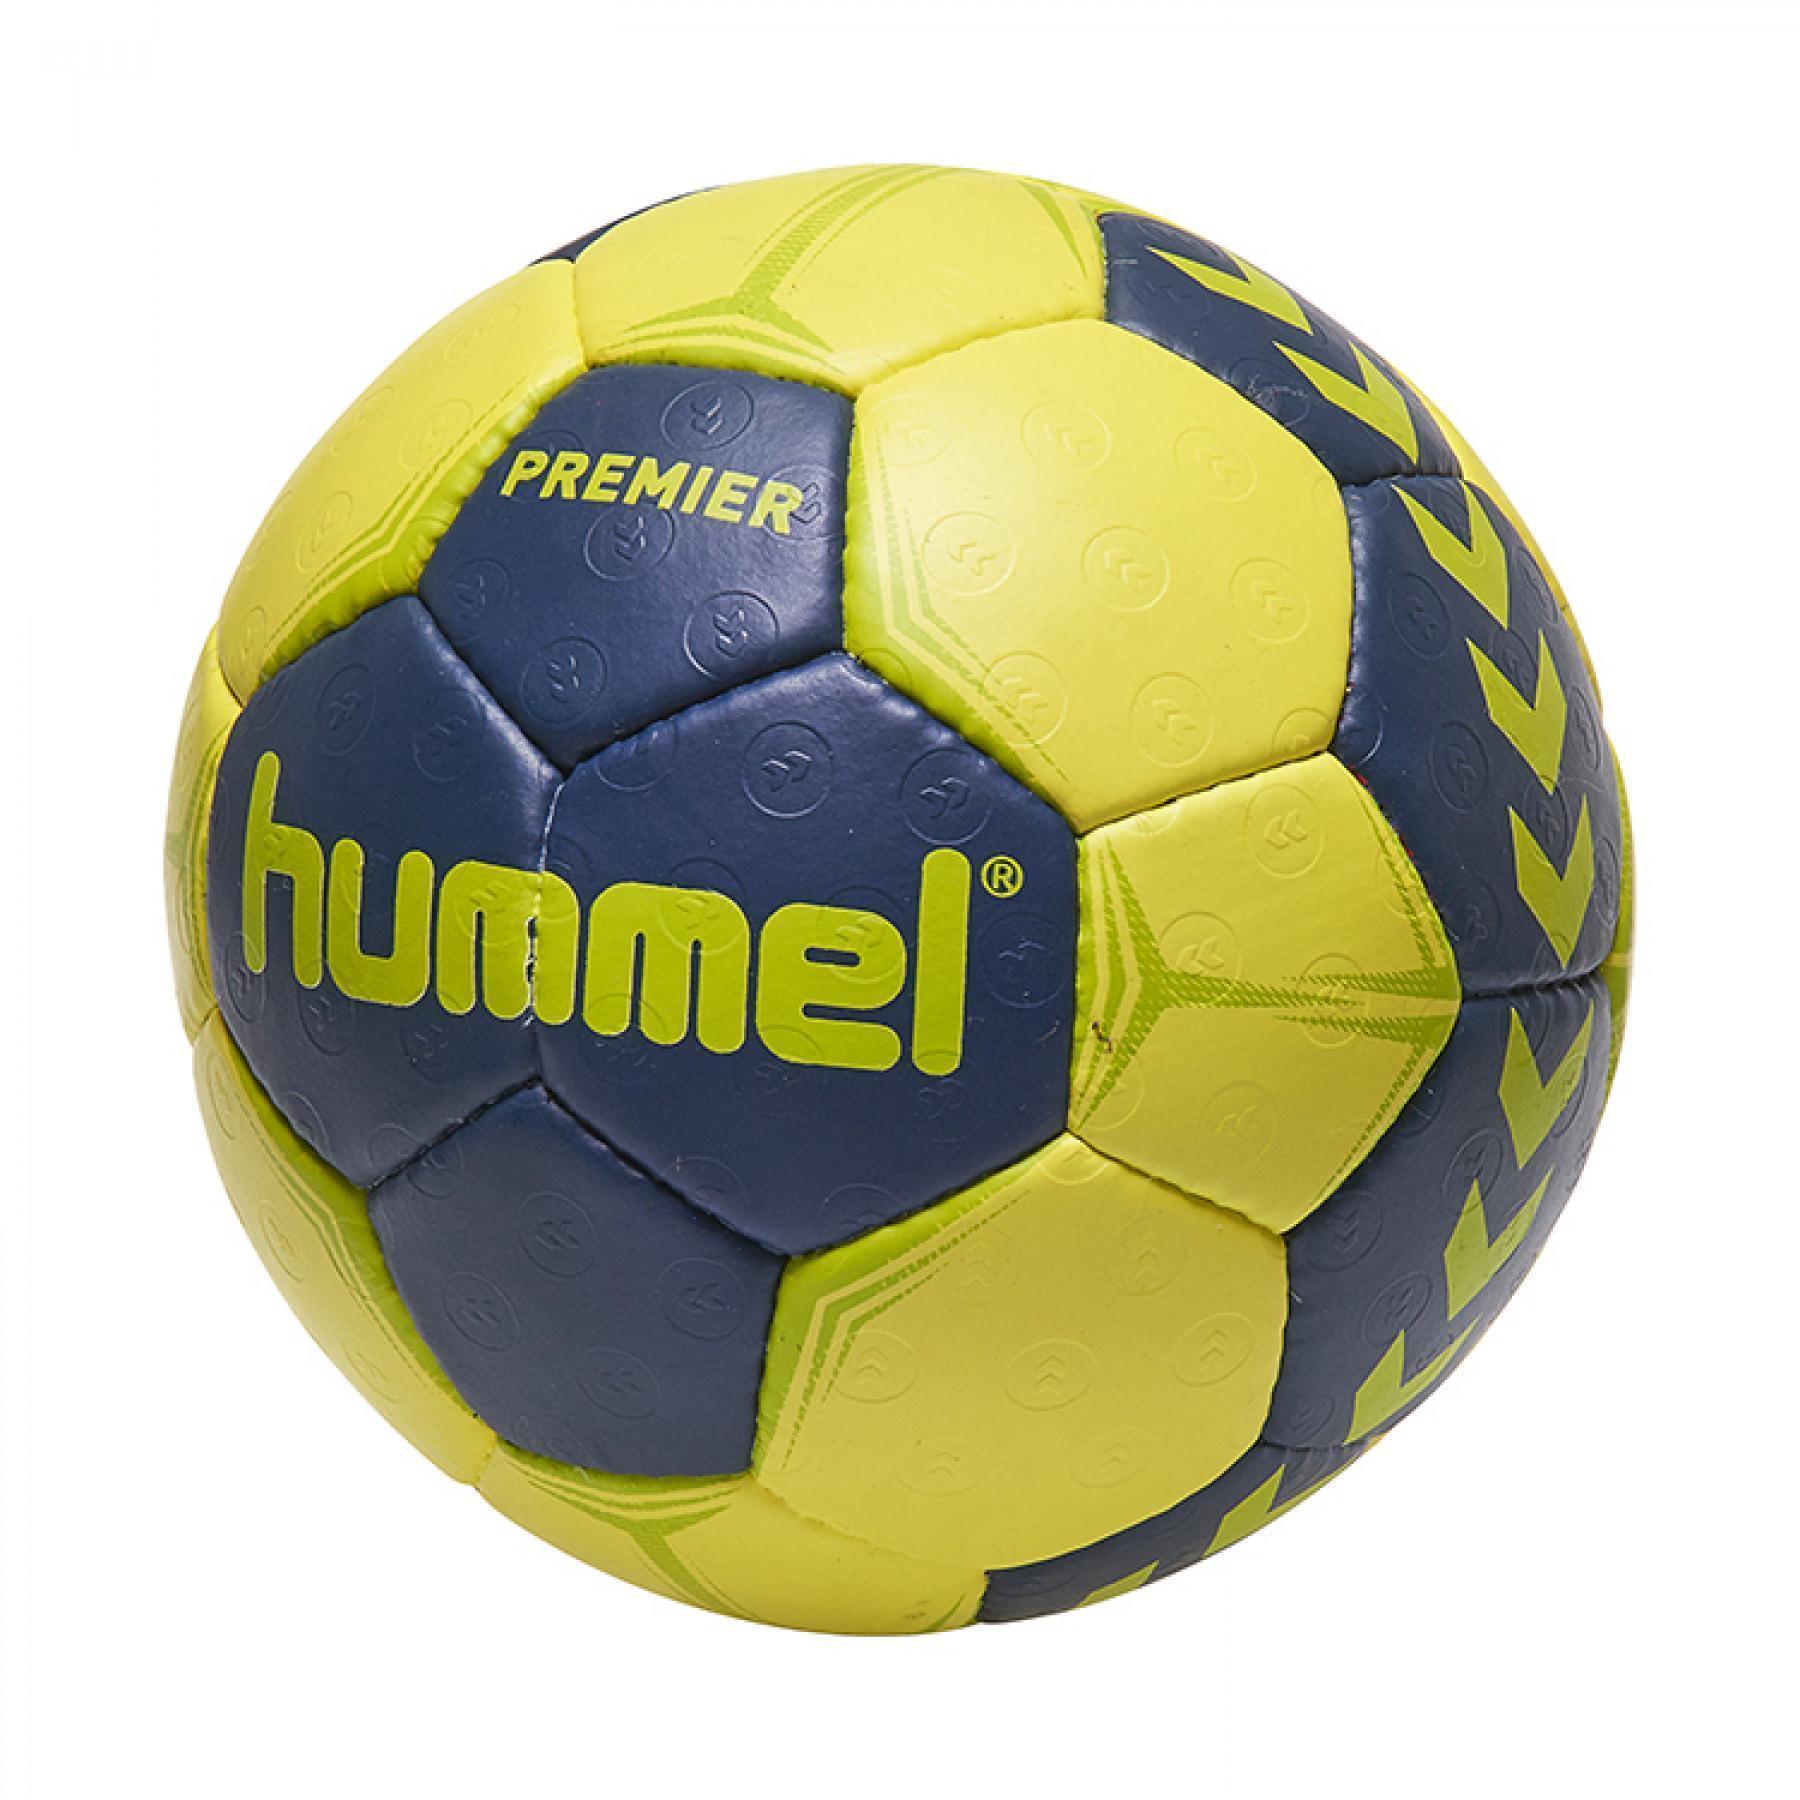 Handball premier